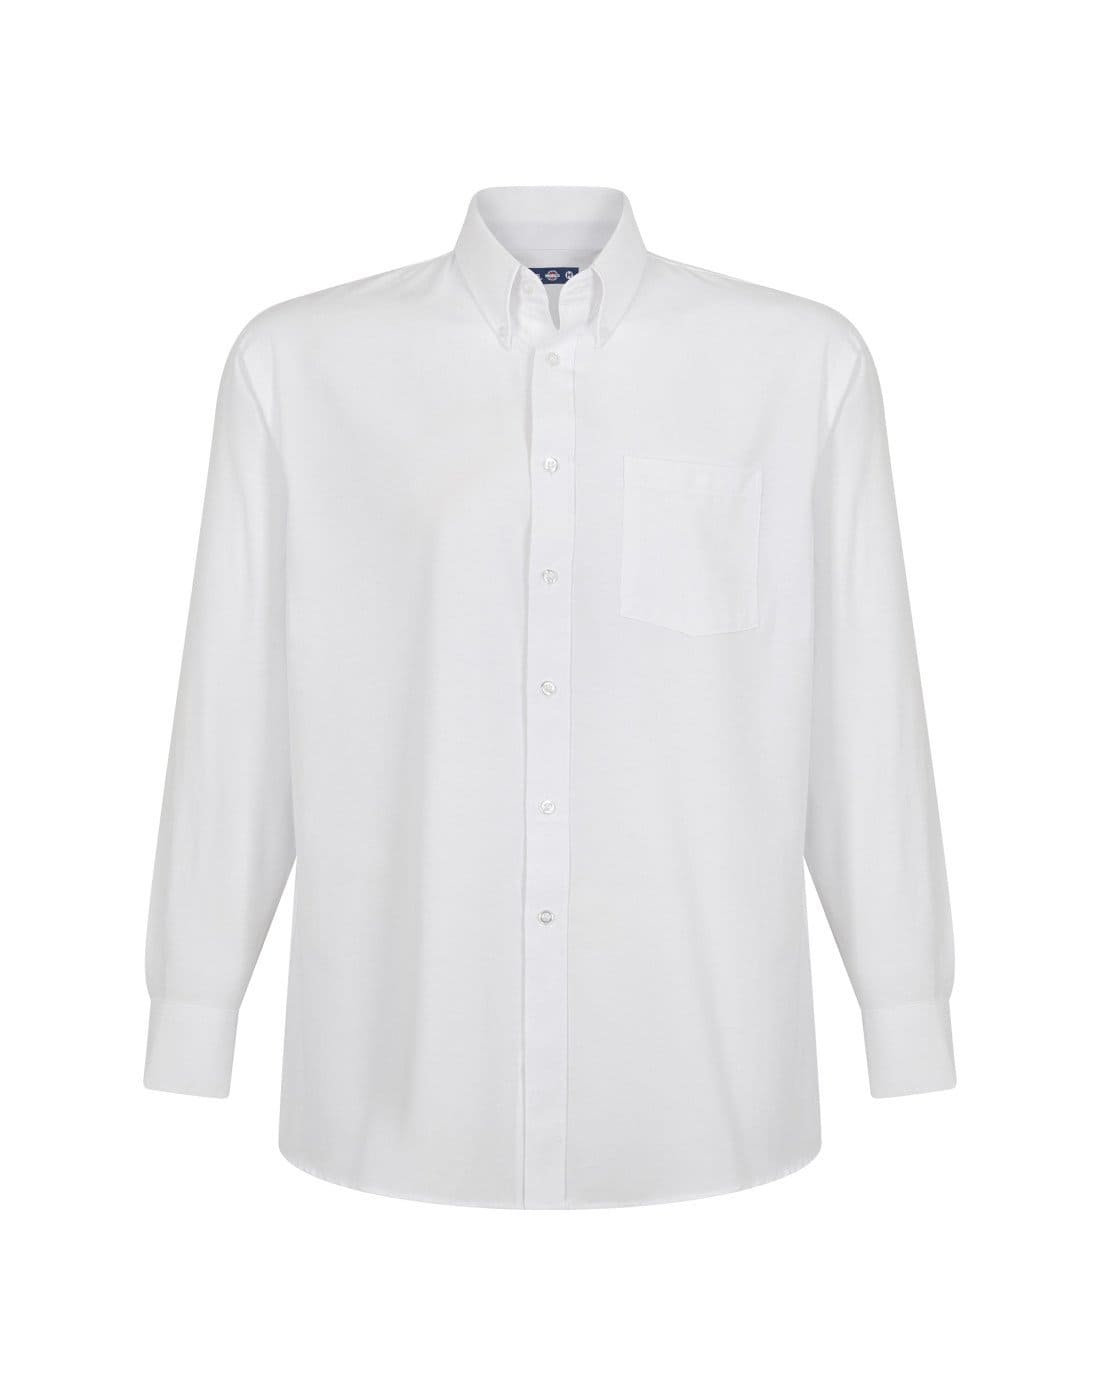 Camisa Oxford con bolsillo de TEAMGRAFF, combinación perfecta de estilo y practicidad, adecuada para profesionales y uso casua